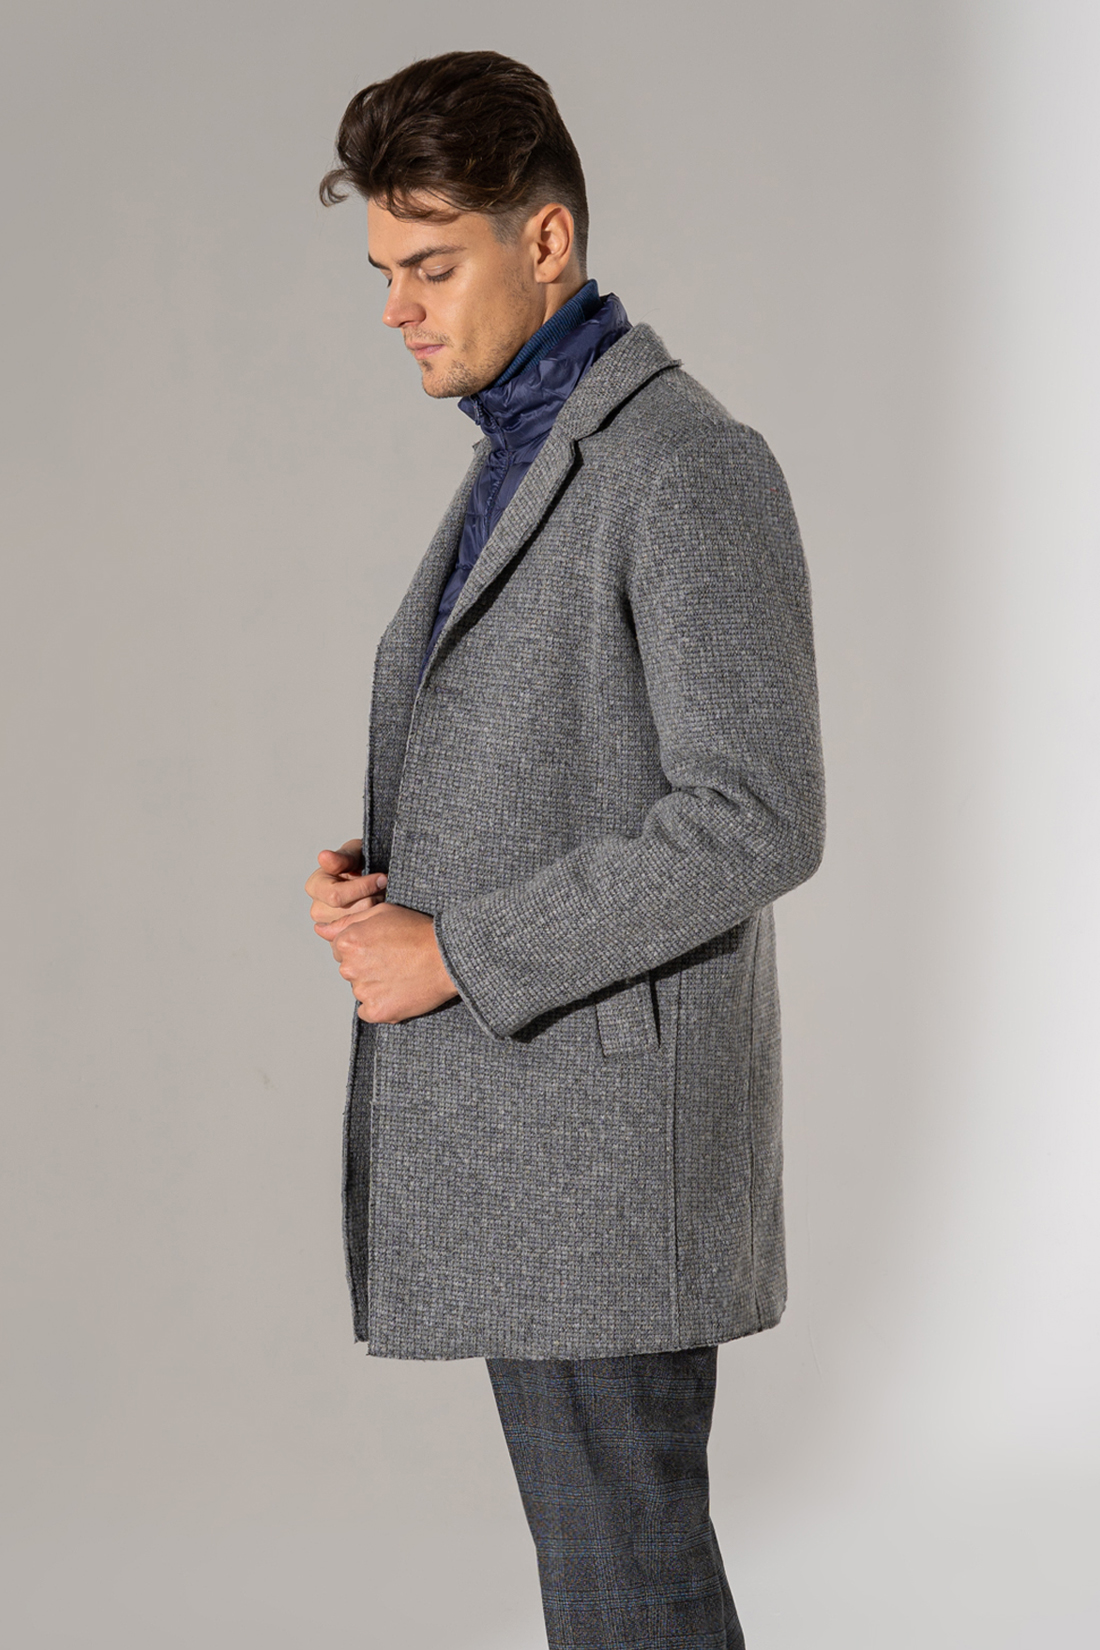 Серое пальто с шерстью (арт. baon B569502), размер XXL, цвет deep grey melange#серый Серое пальто с шерстью (арт. baon B569502) - фото 3